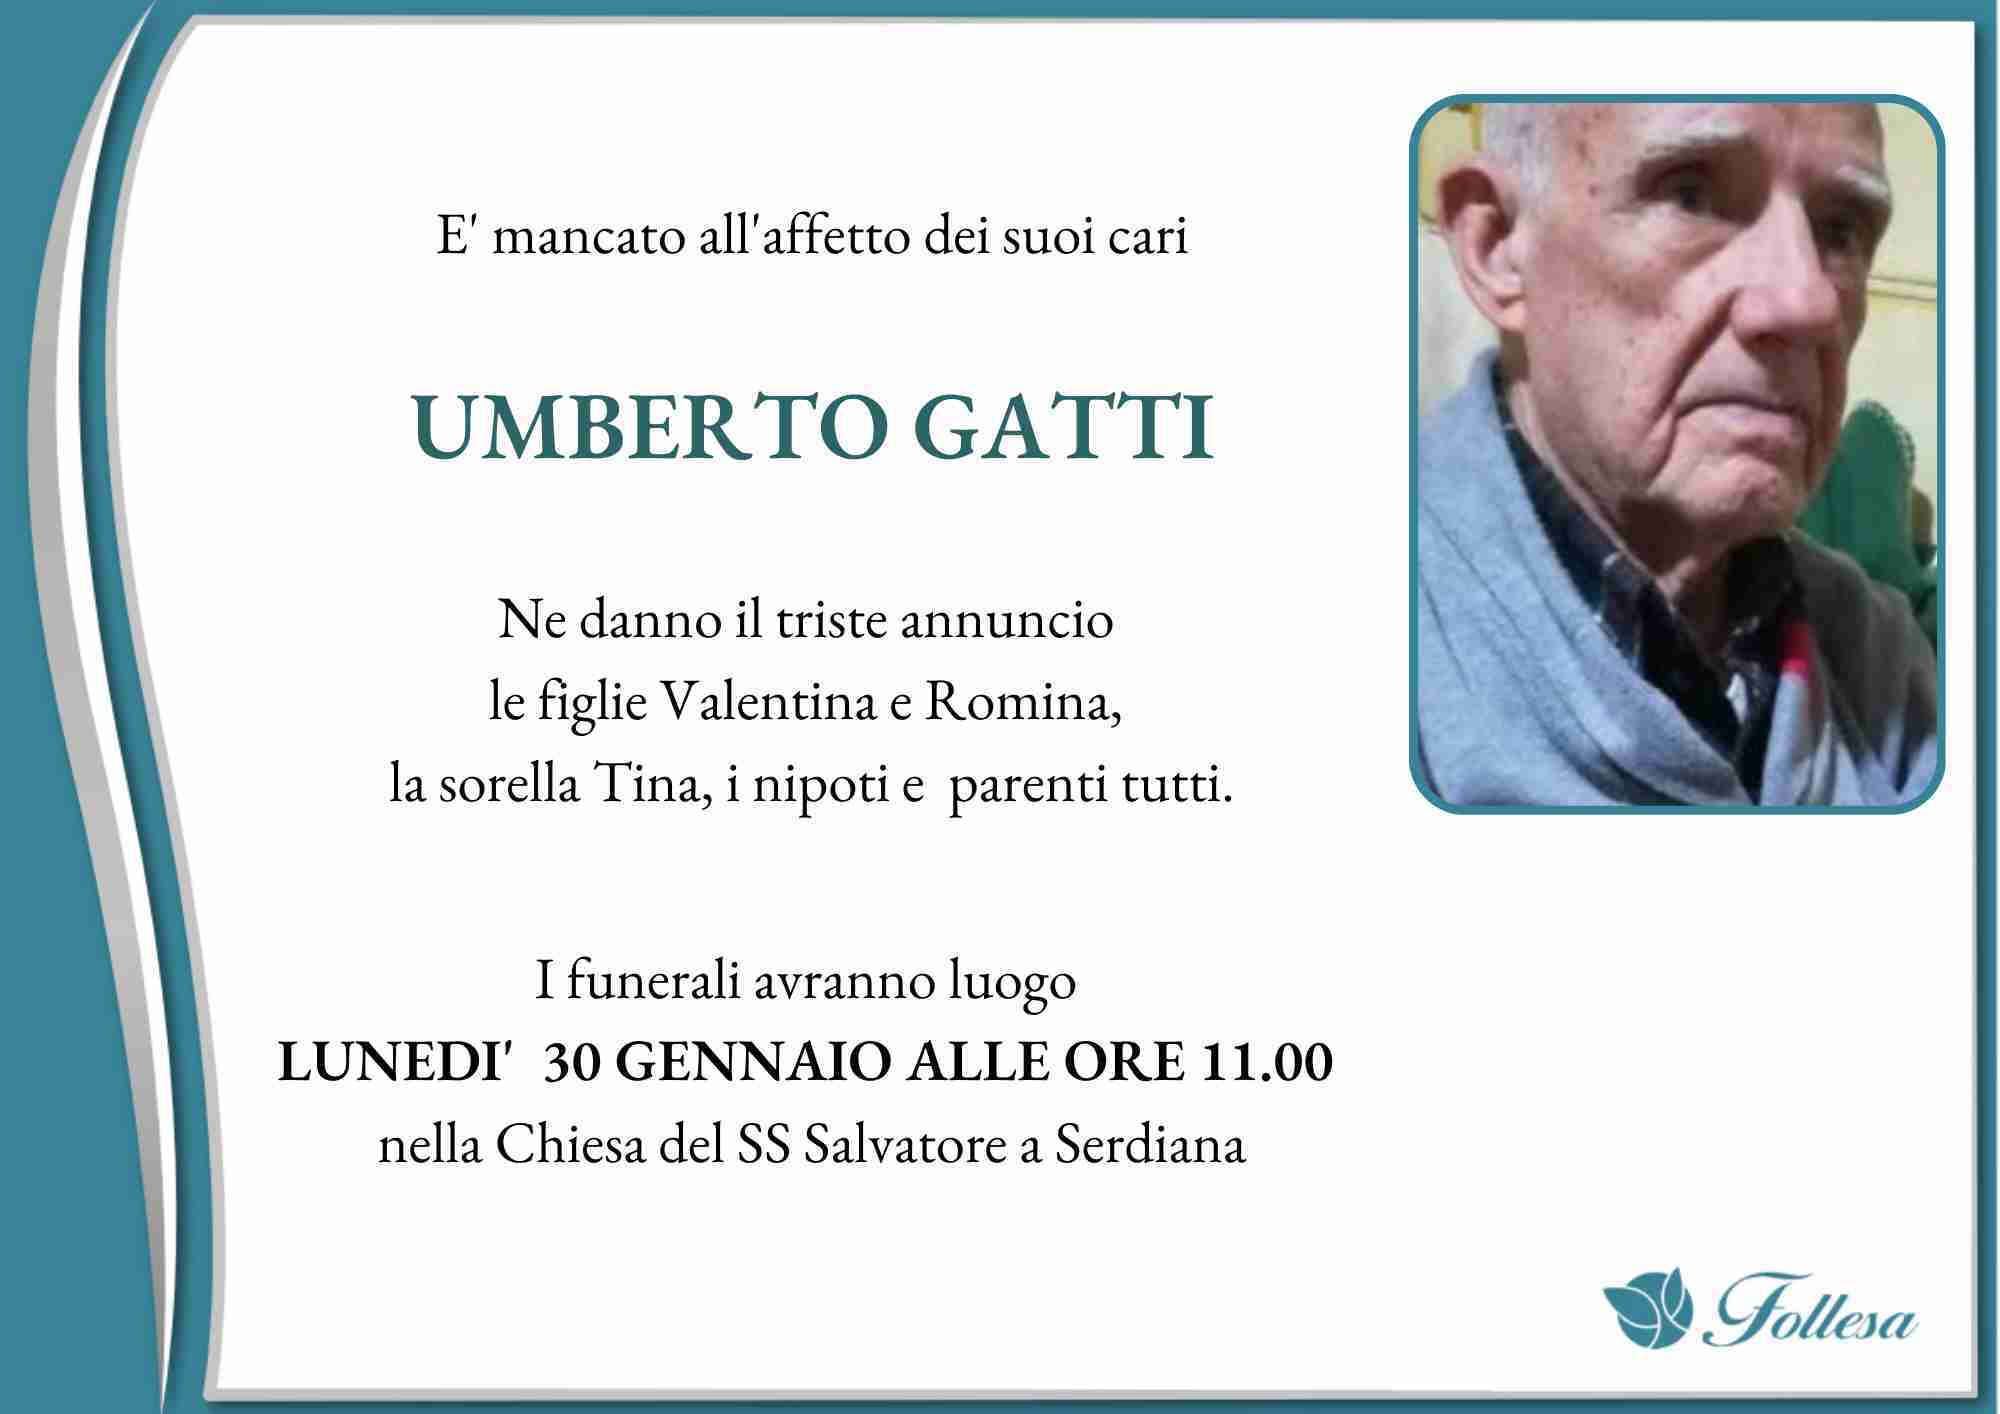 Umberto Gatti